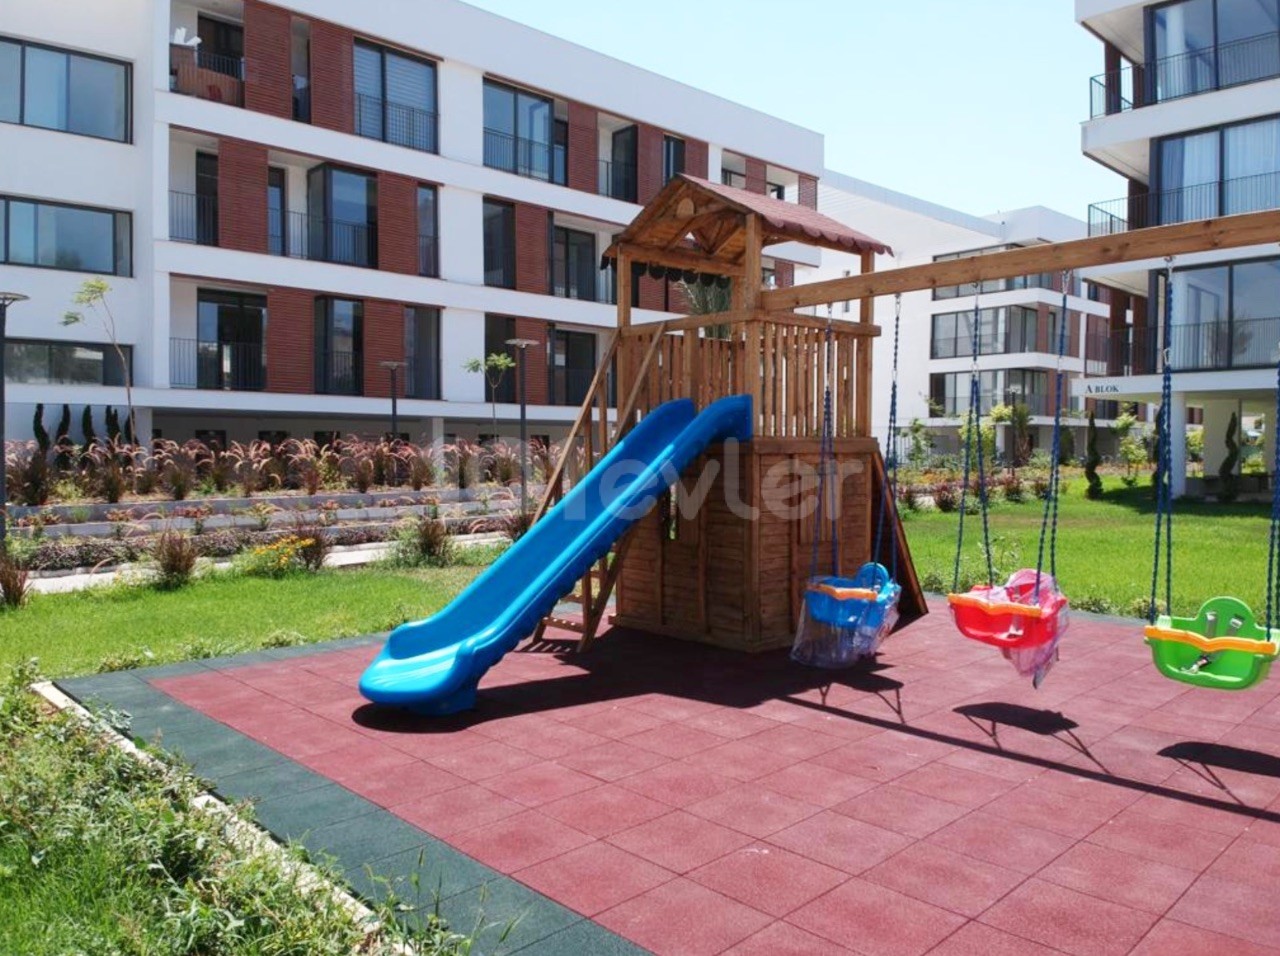 قبرس، نیکوزیا، حمیتکوی 3+1 آپارتمان مبله جدید برای اجاره، در یک مجتمع امن، کامل، نزدیک به دانشگاه، با زمین بازی برای کودکان